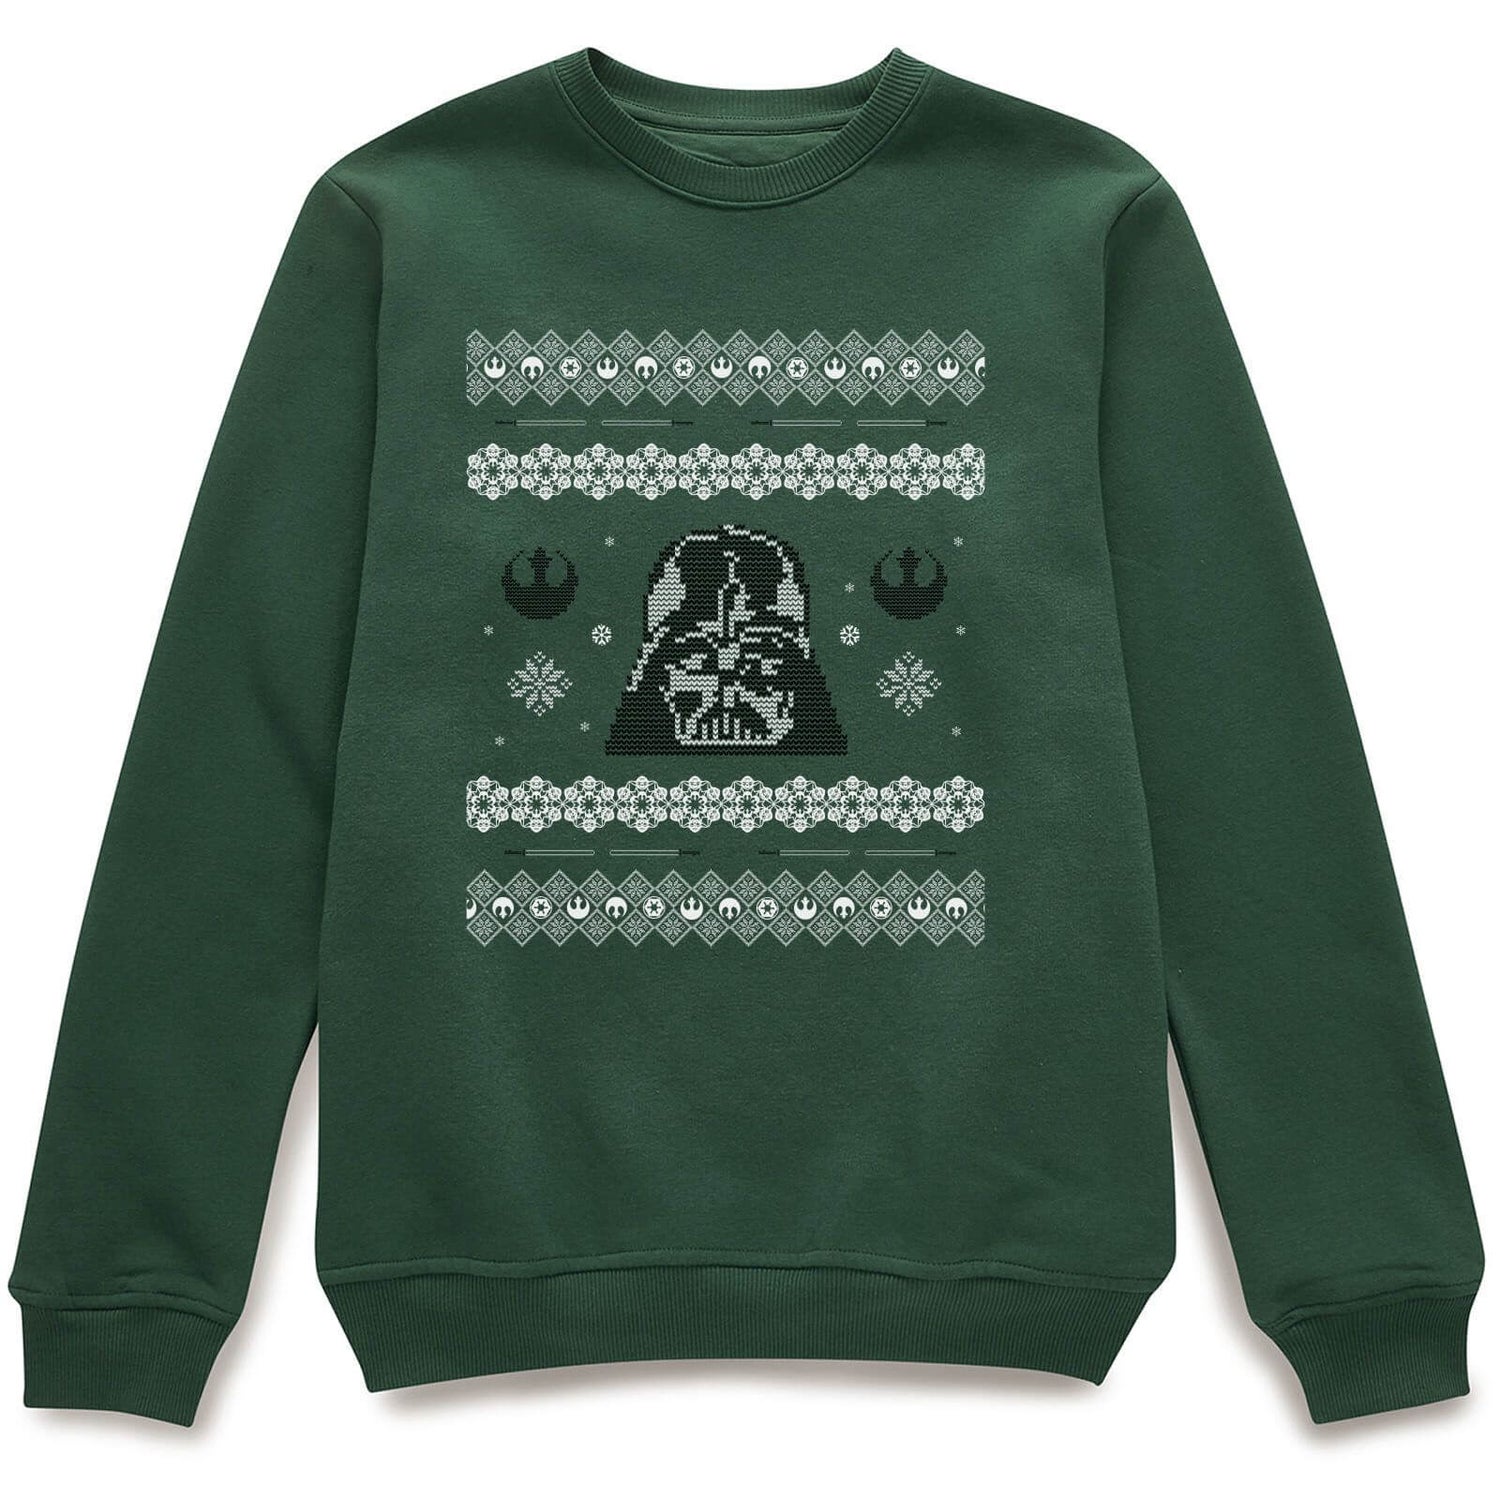 Sudadera Navidad Star Wars "Darth Vader" - Hombre/Mujer - Verde